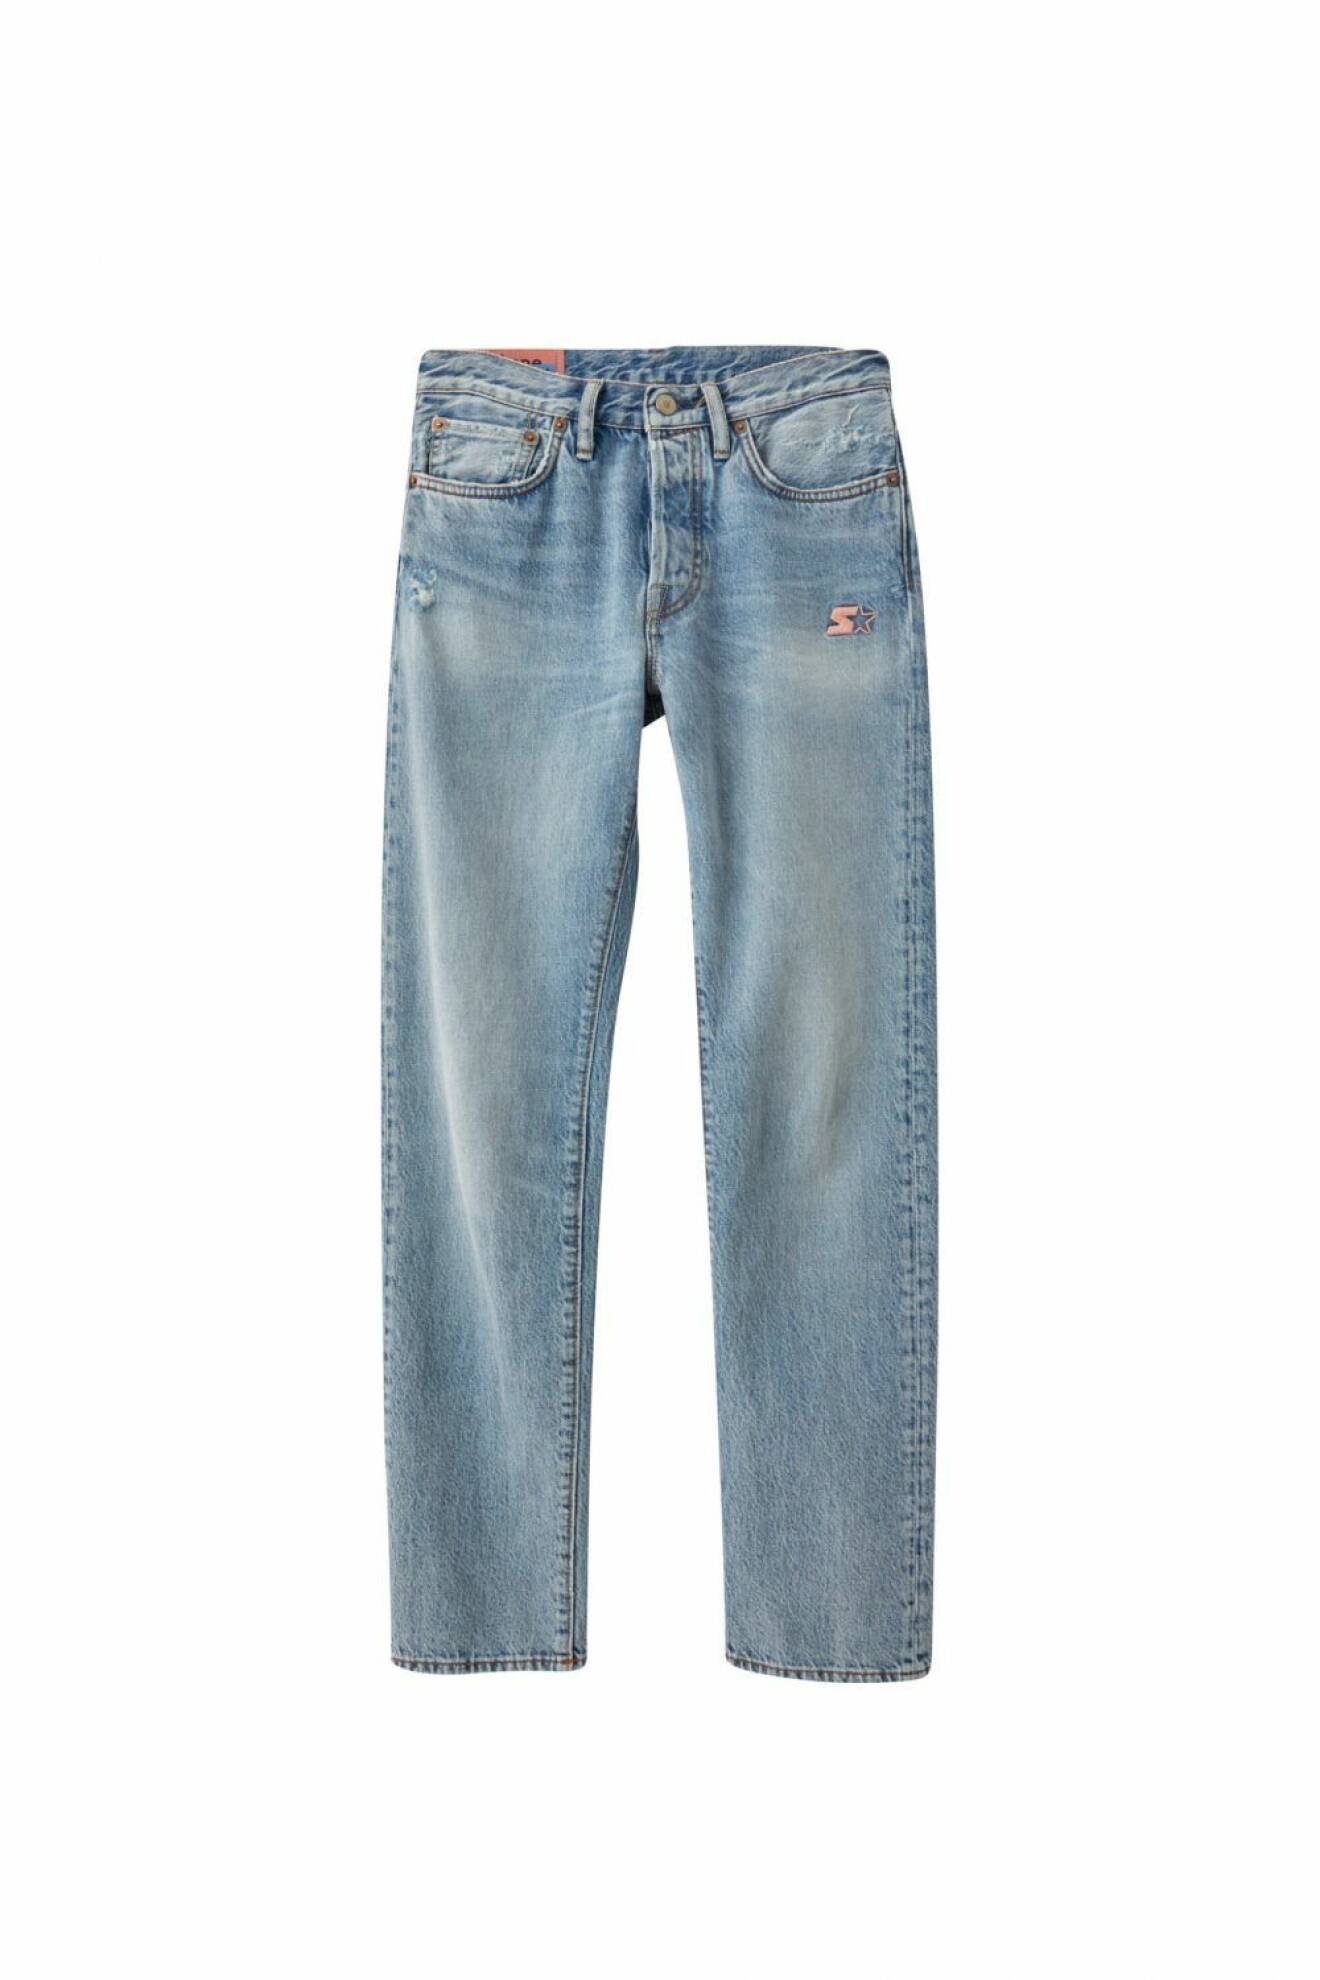 Jeans inspirerade av Acne Studios 1996 och 1997. 